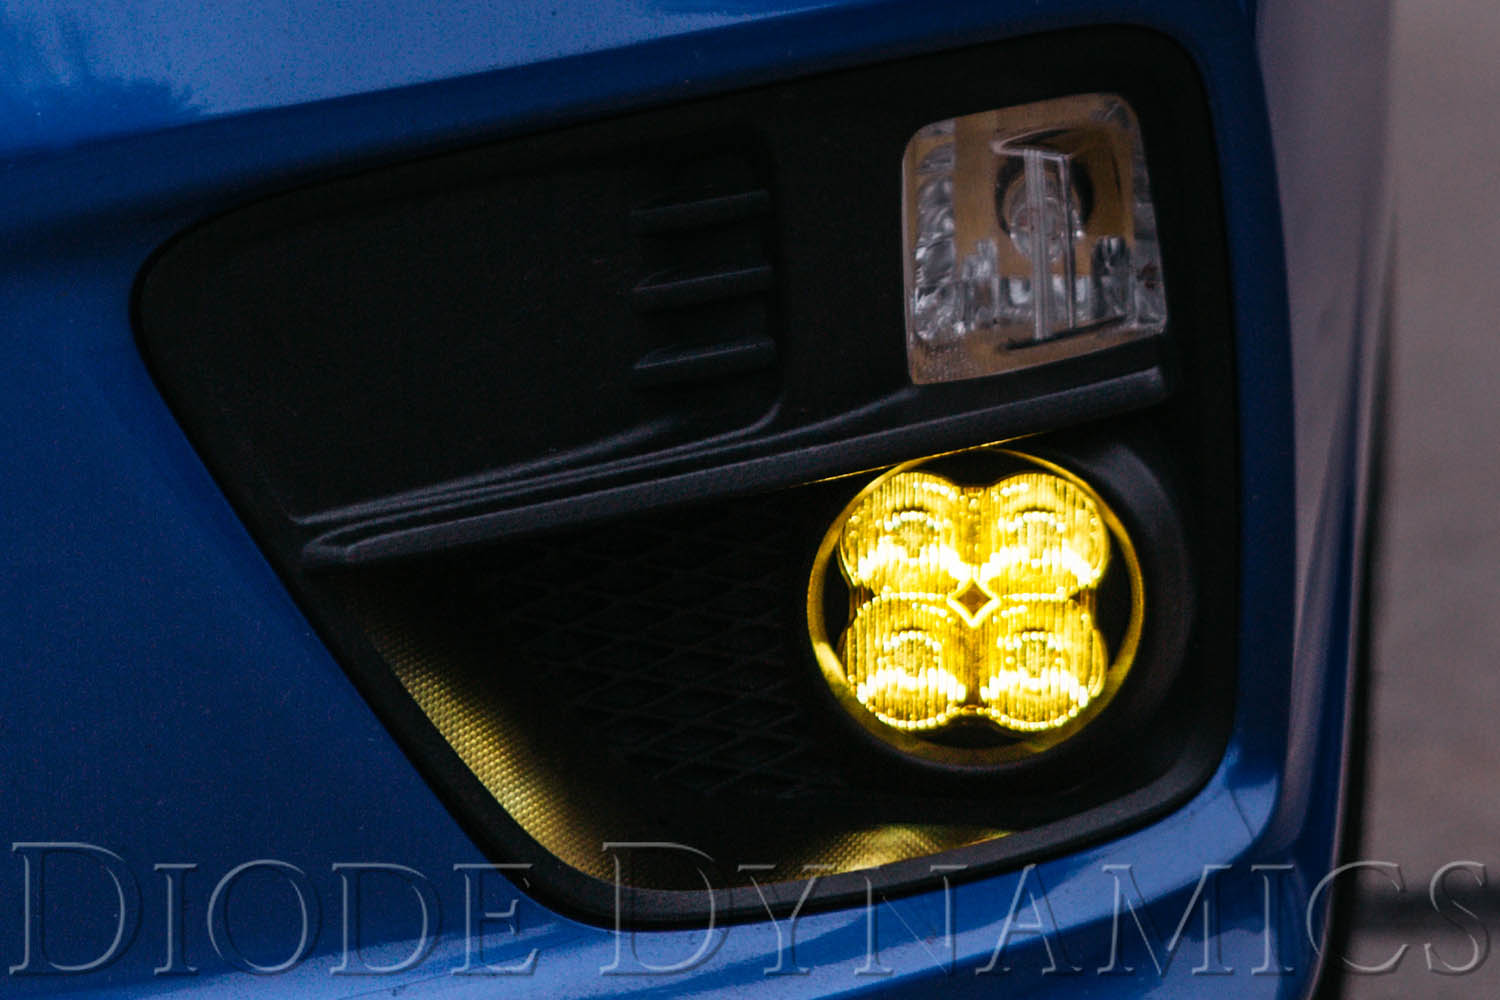 SS3 LED Fog Light Kit for 2011-2013 Acura TSX White SAE/DOT Driving Pro Diode Dynamics